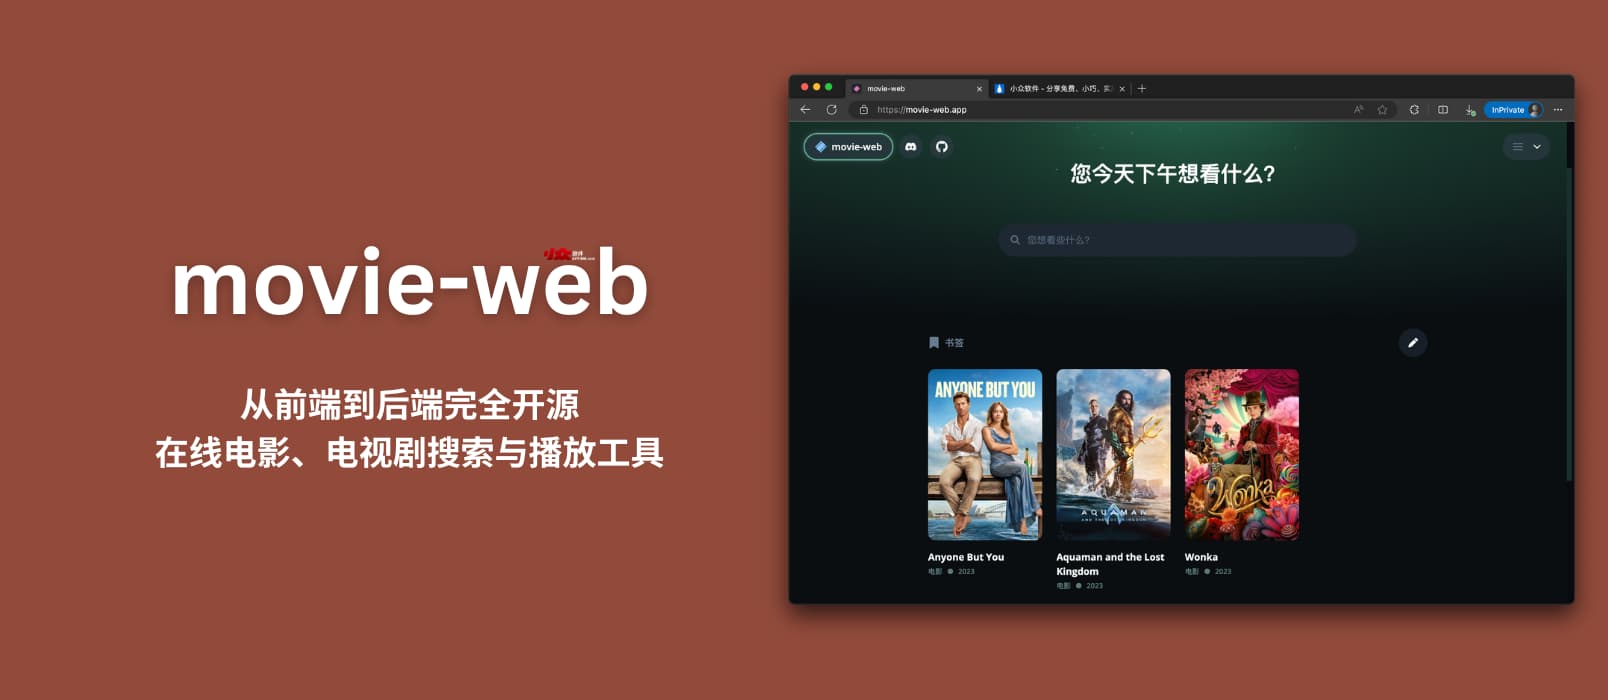 movie-web – 从前端到后端完全开源的在线电影、电视剧搜索与播放工具